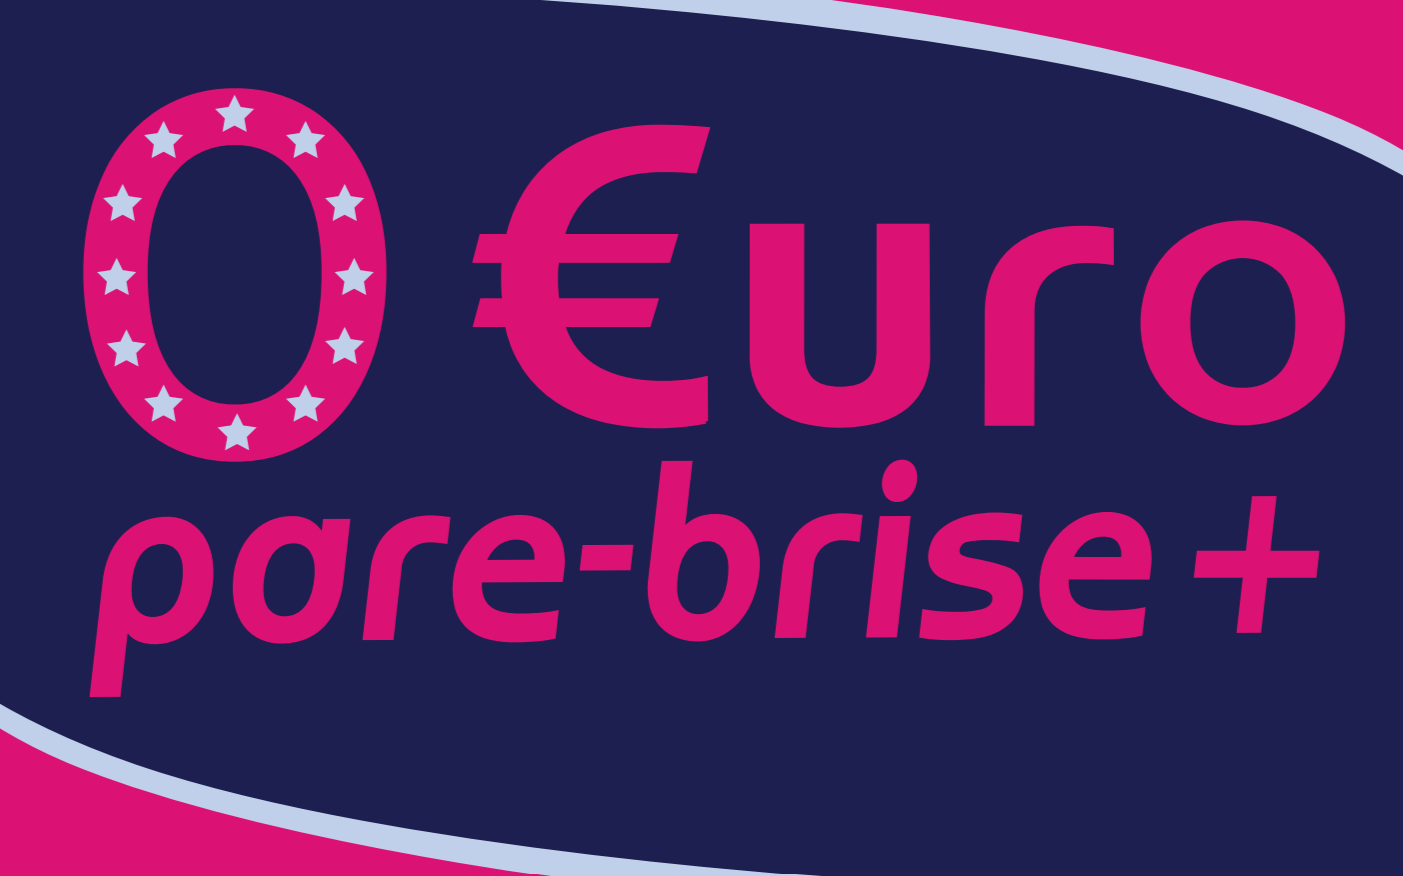 Euro Pare-Brise + partenaire du magasin Boulanger Wittenheim